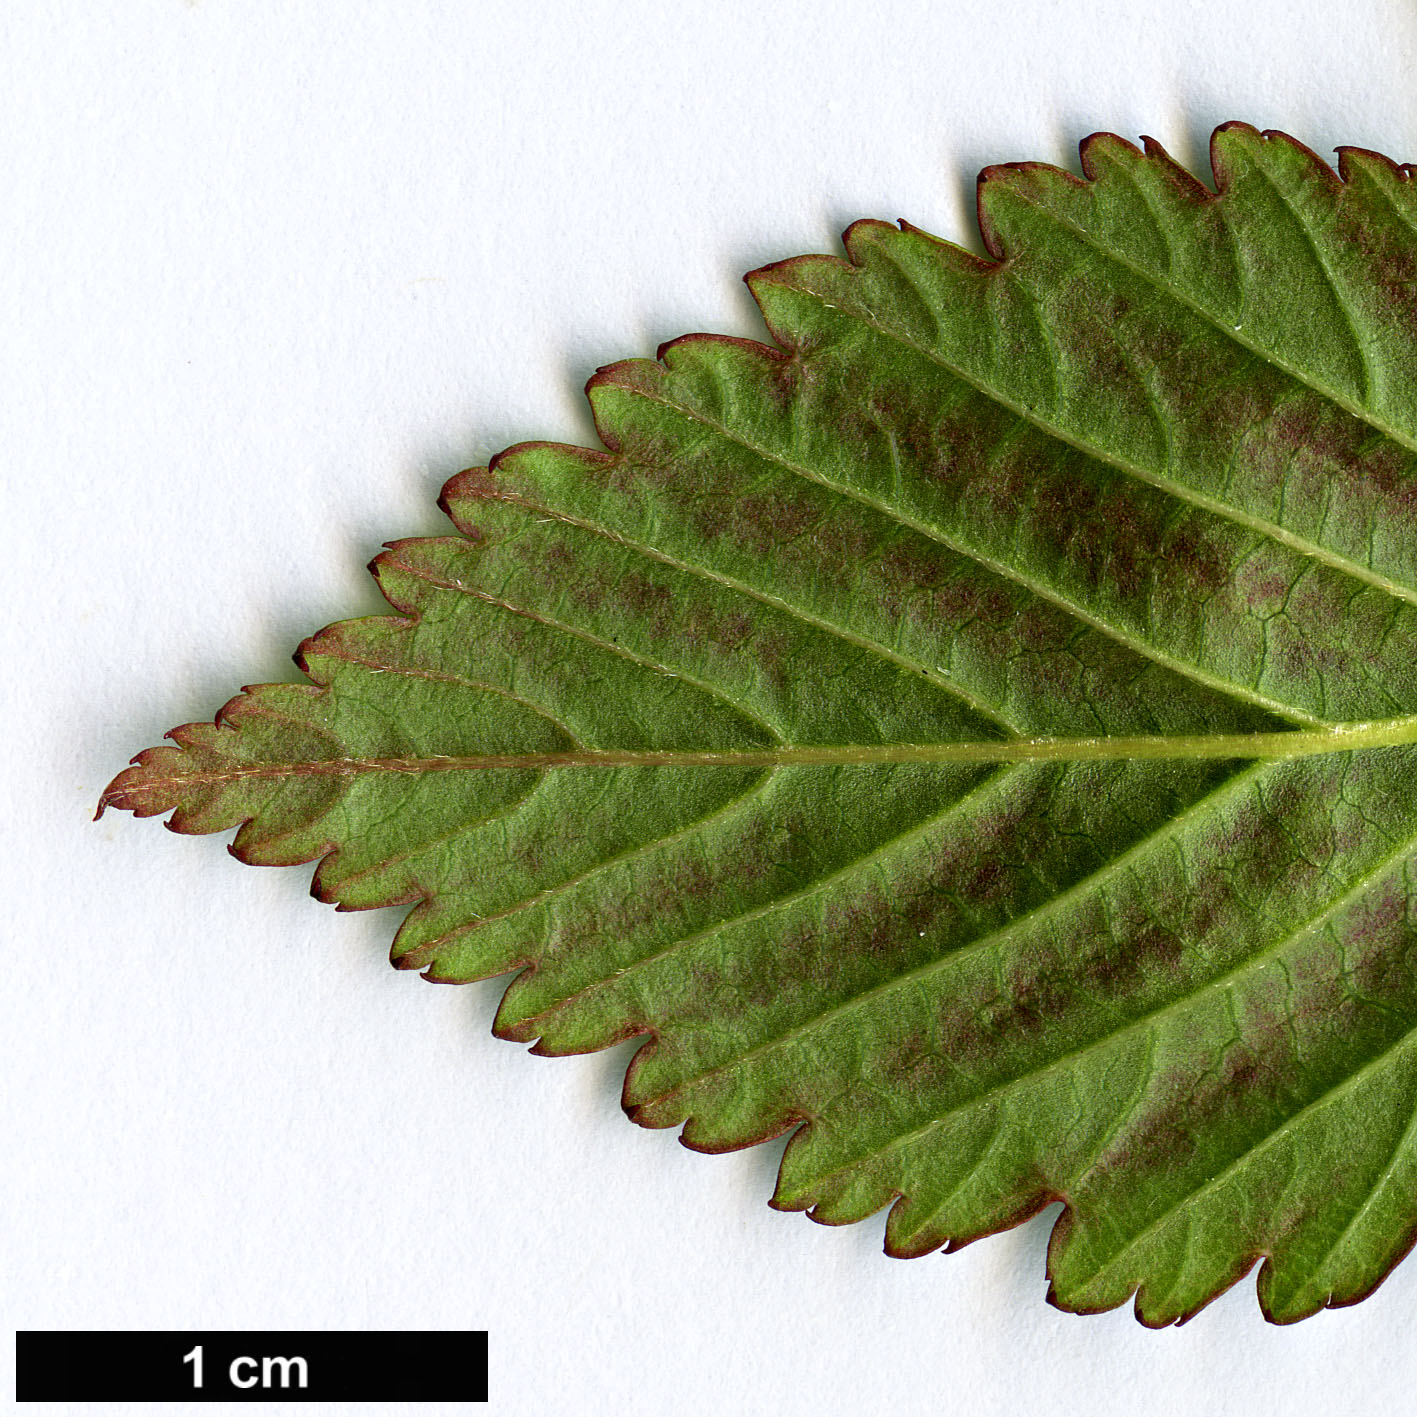 High resolution image: Family: Rosaceae - Genus: Rubus - Taxon: fraxinifolius